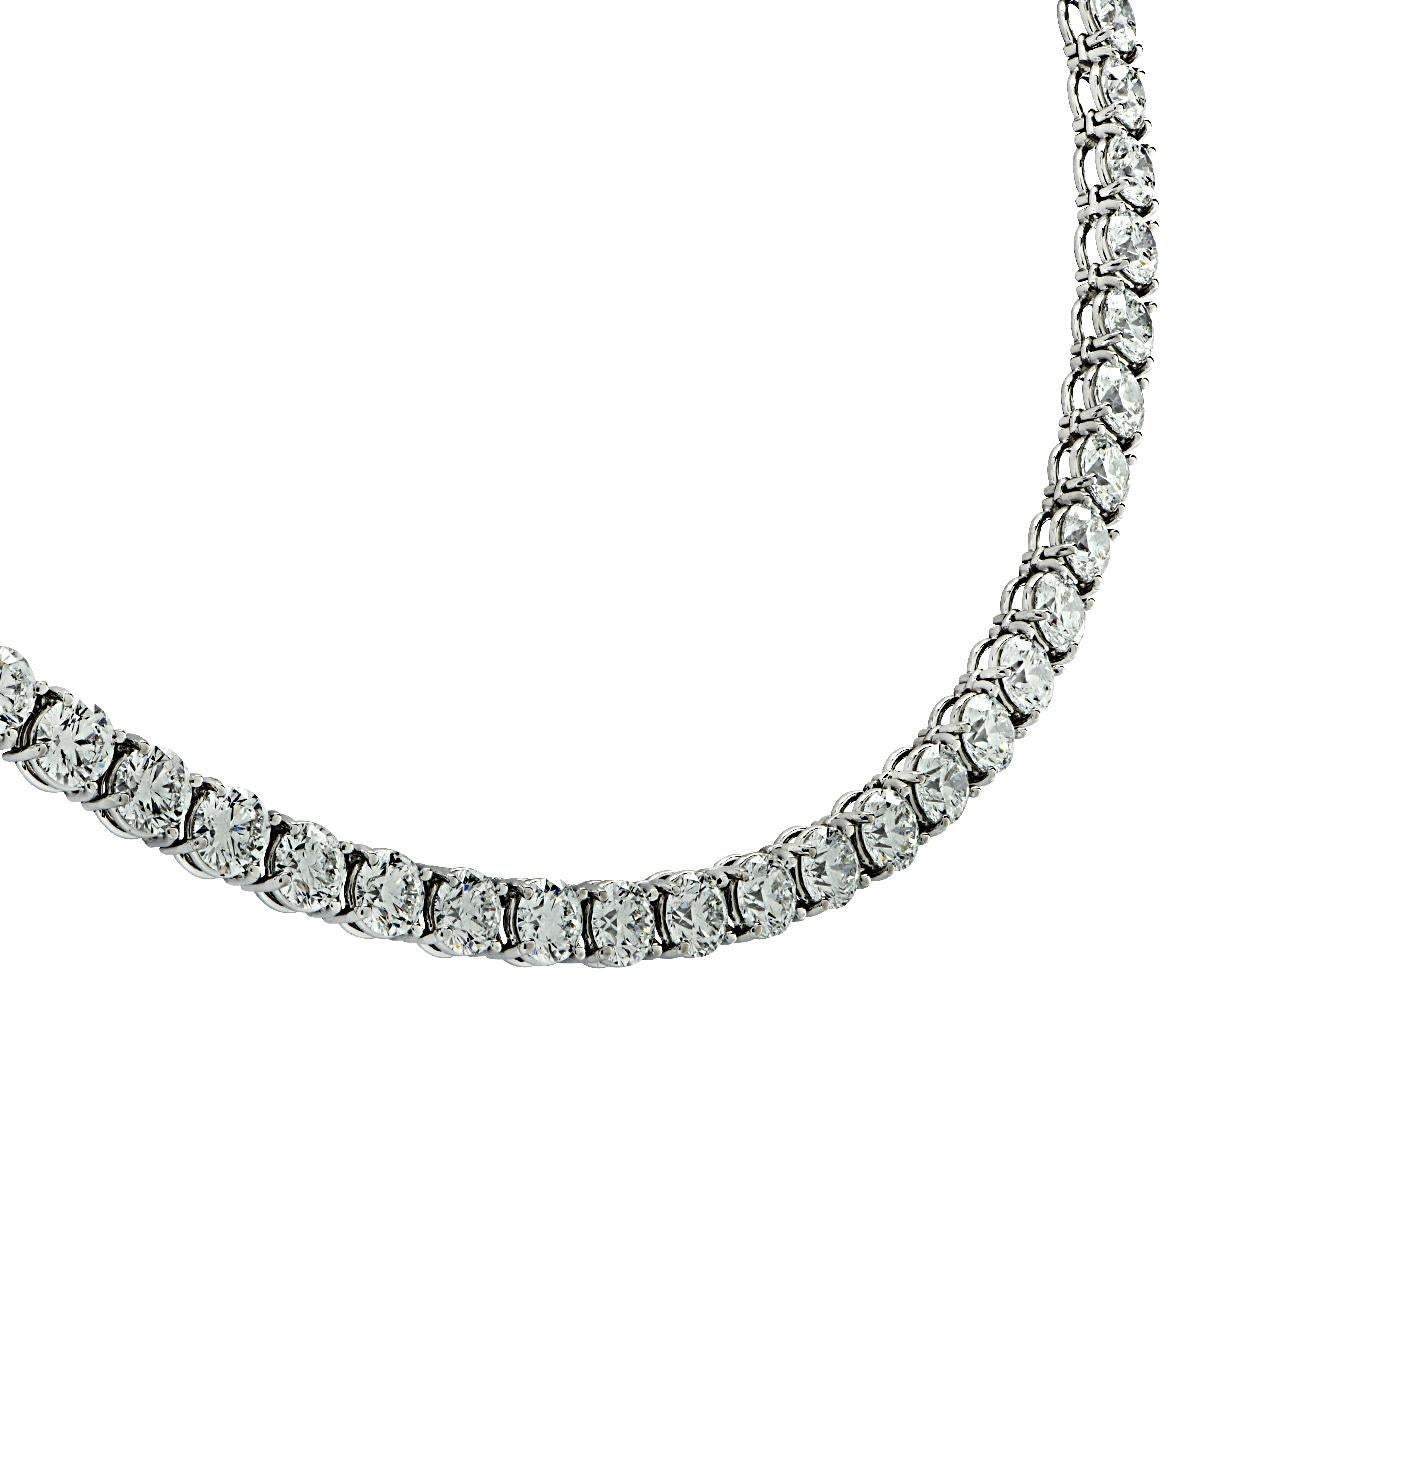 5 carat diamond necklace pendant